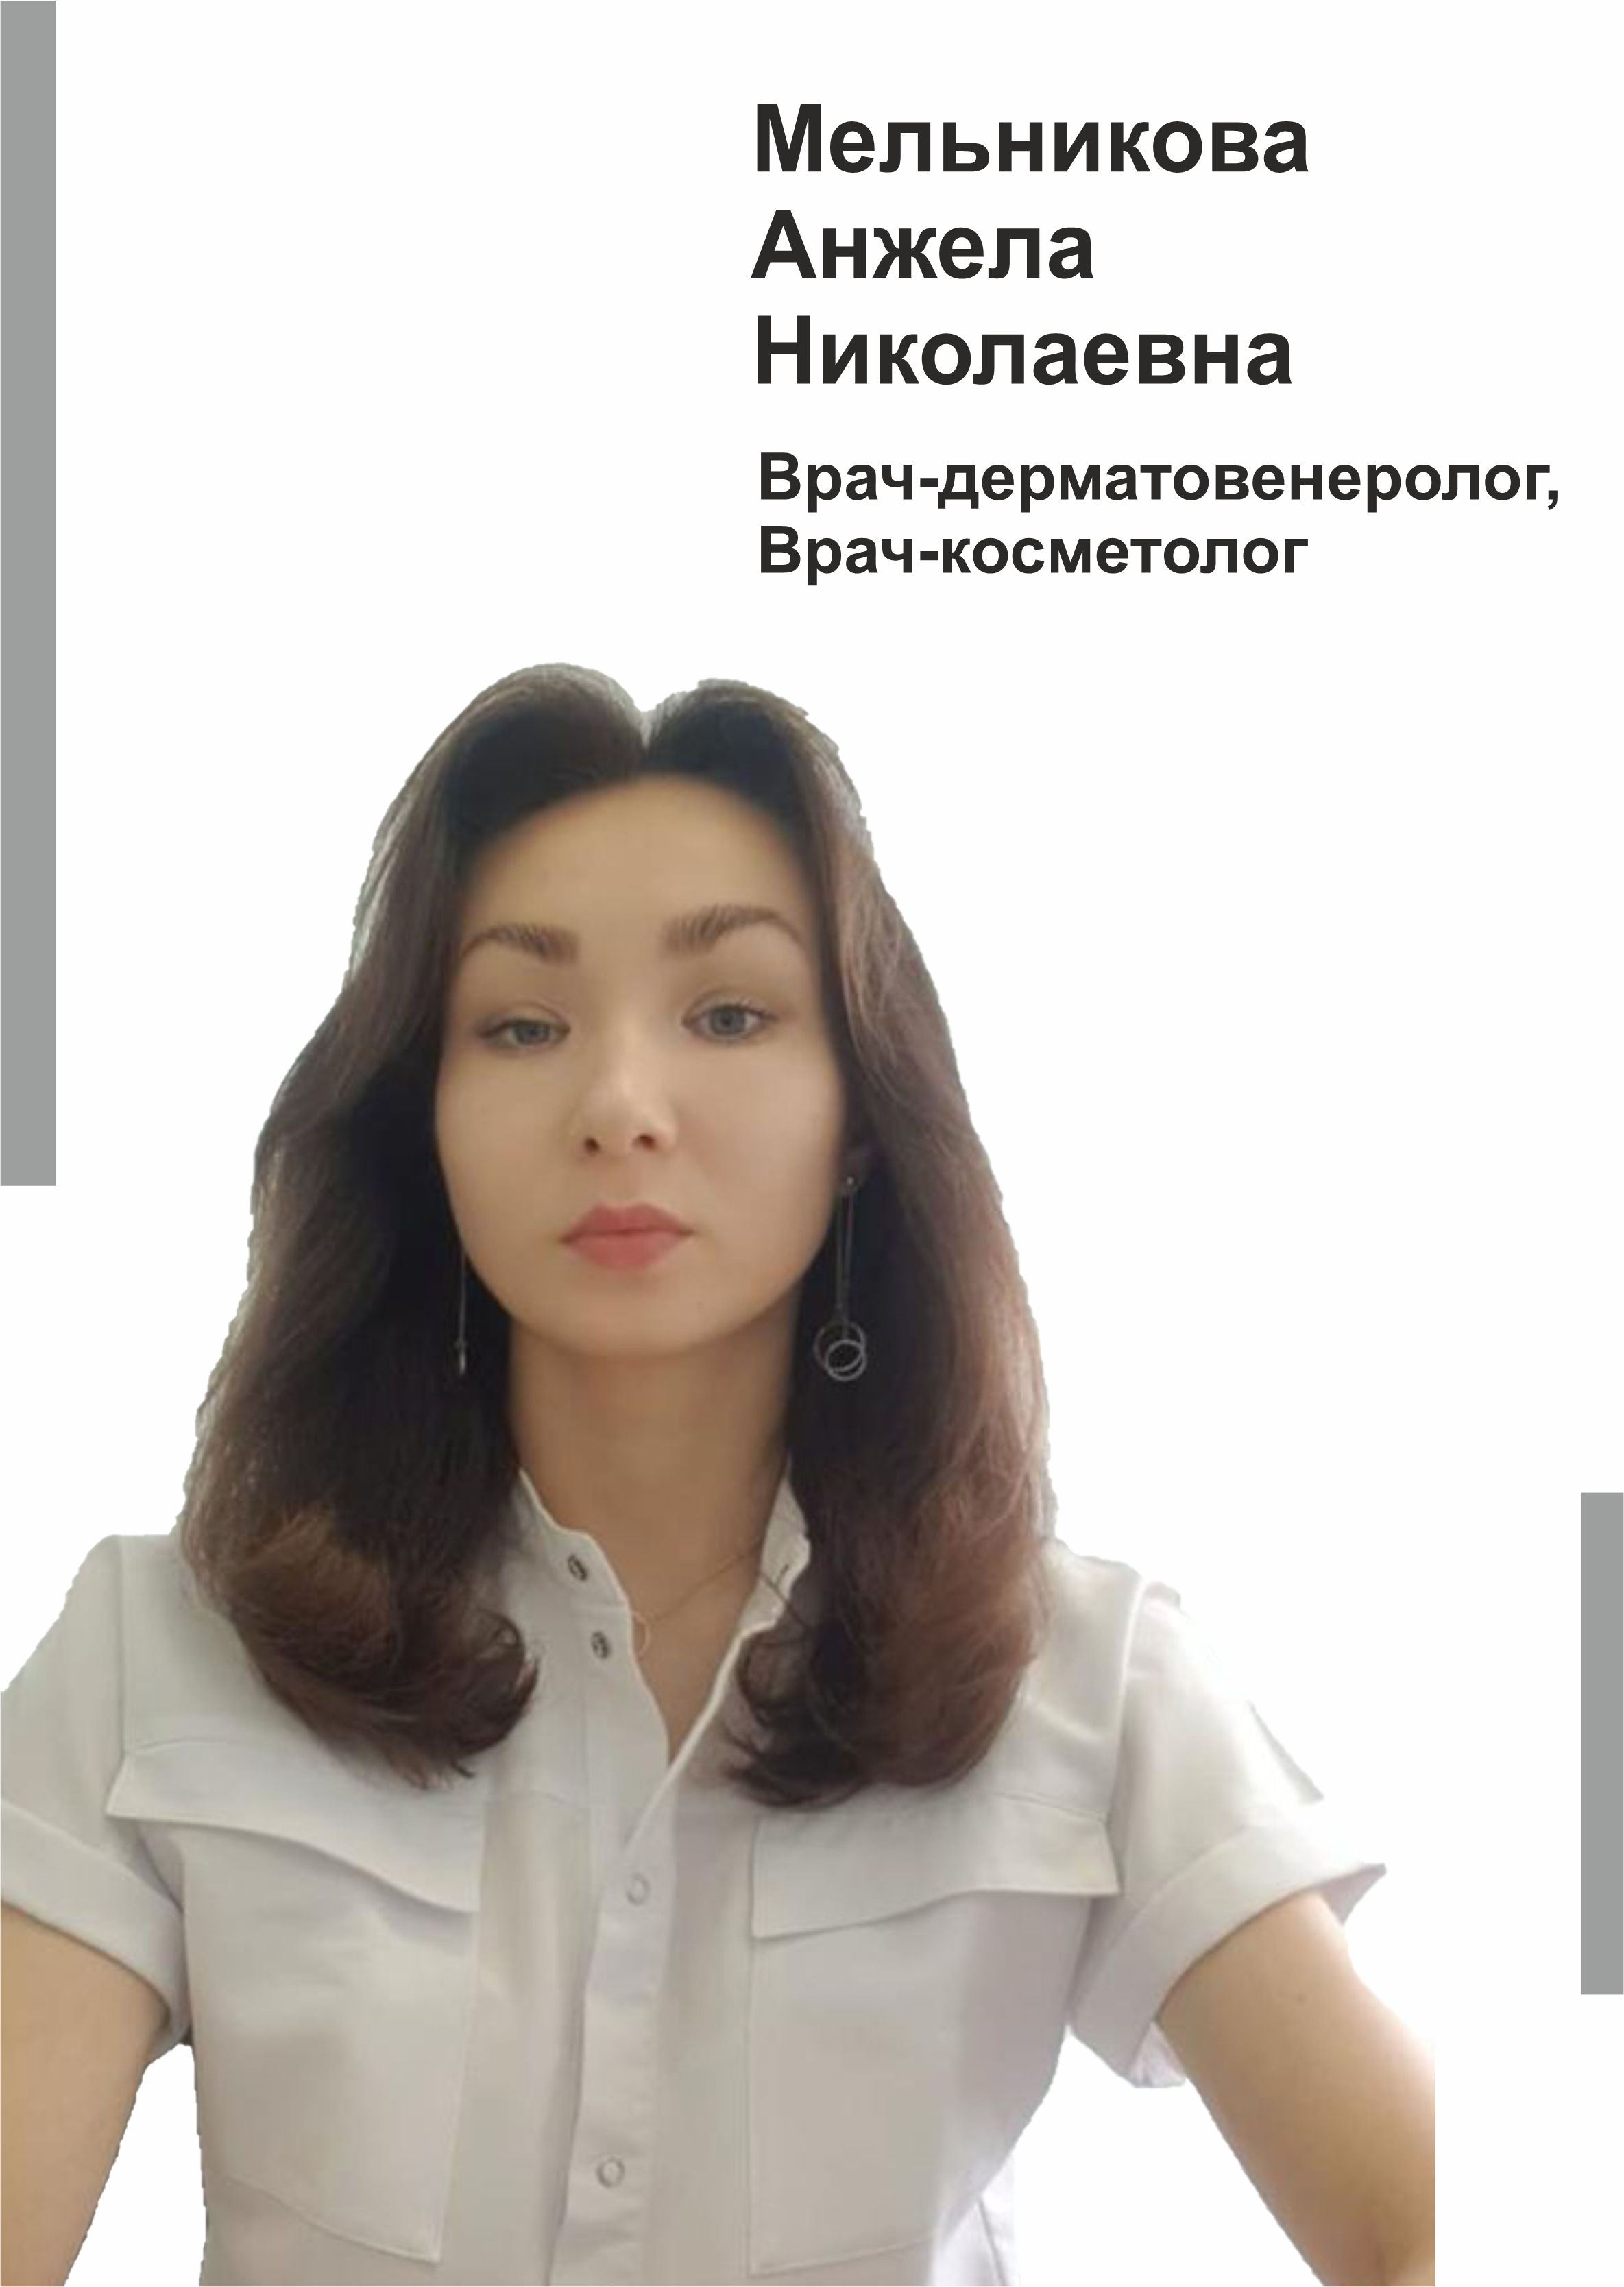 Мельникова Анжела Николаевна - врач-дерматовенеролог, врач-косметолог в клинике Lezaffe г. Югорск